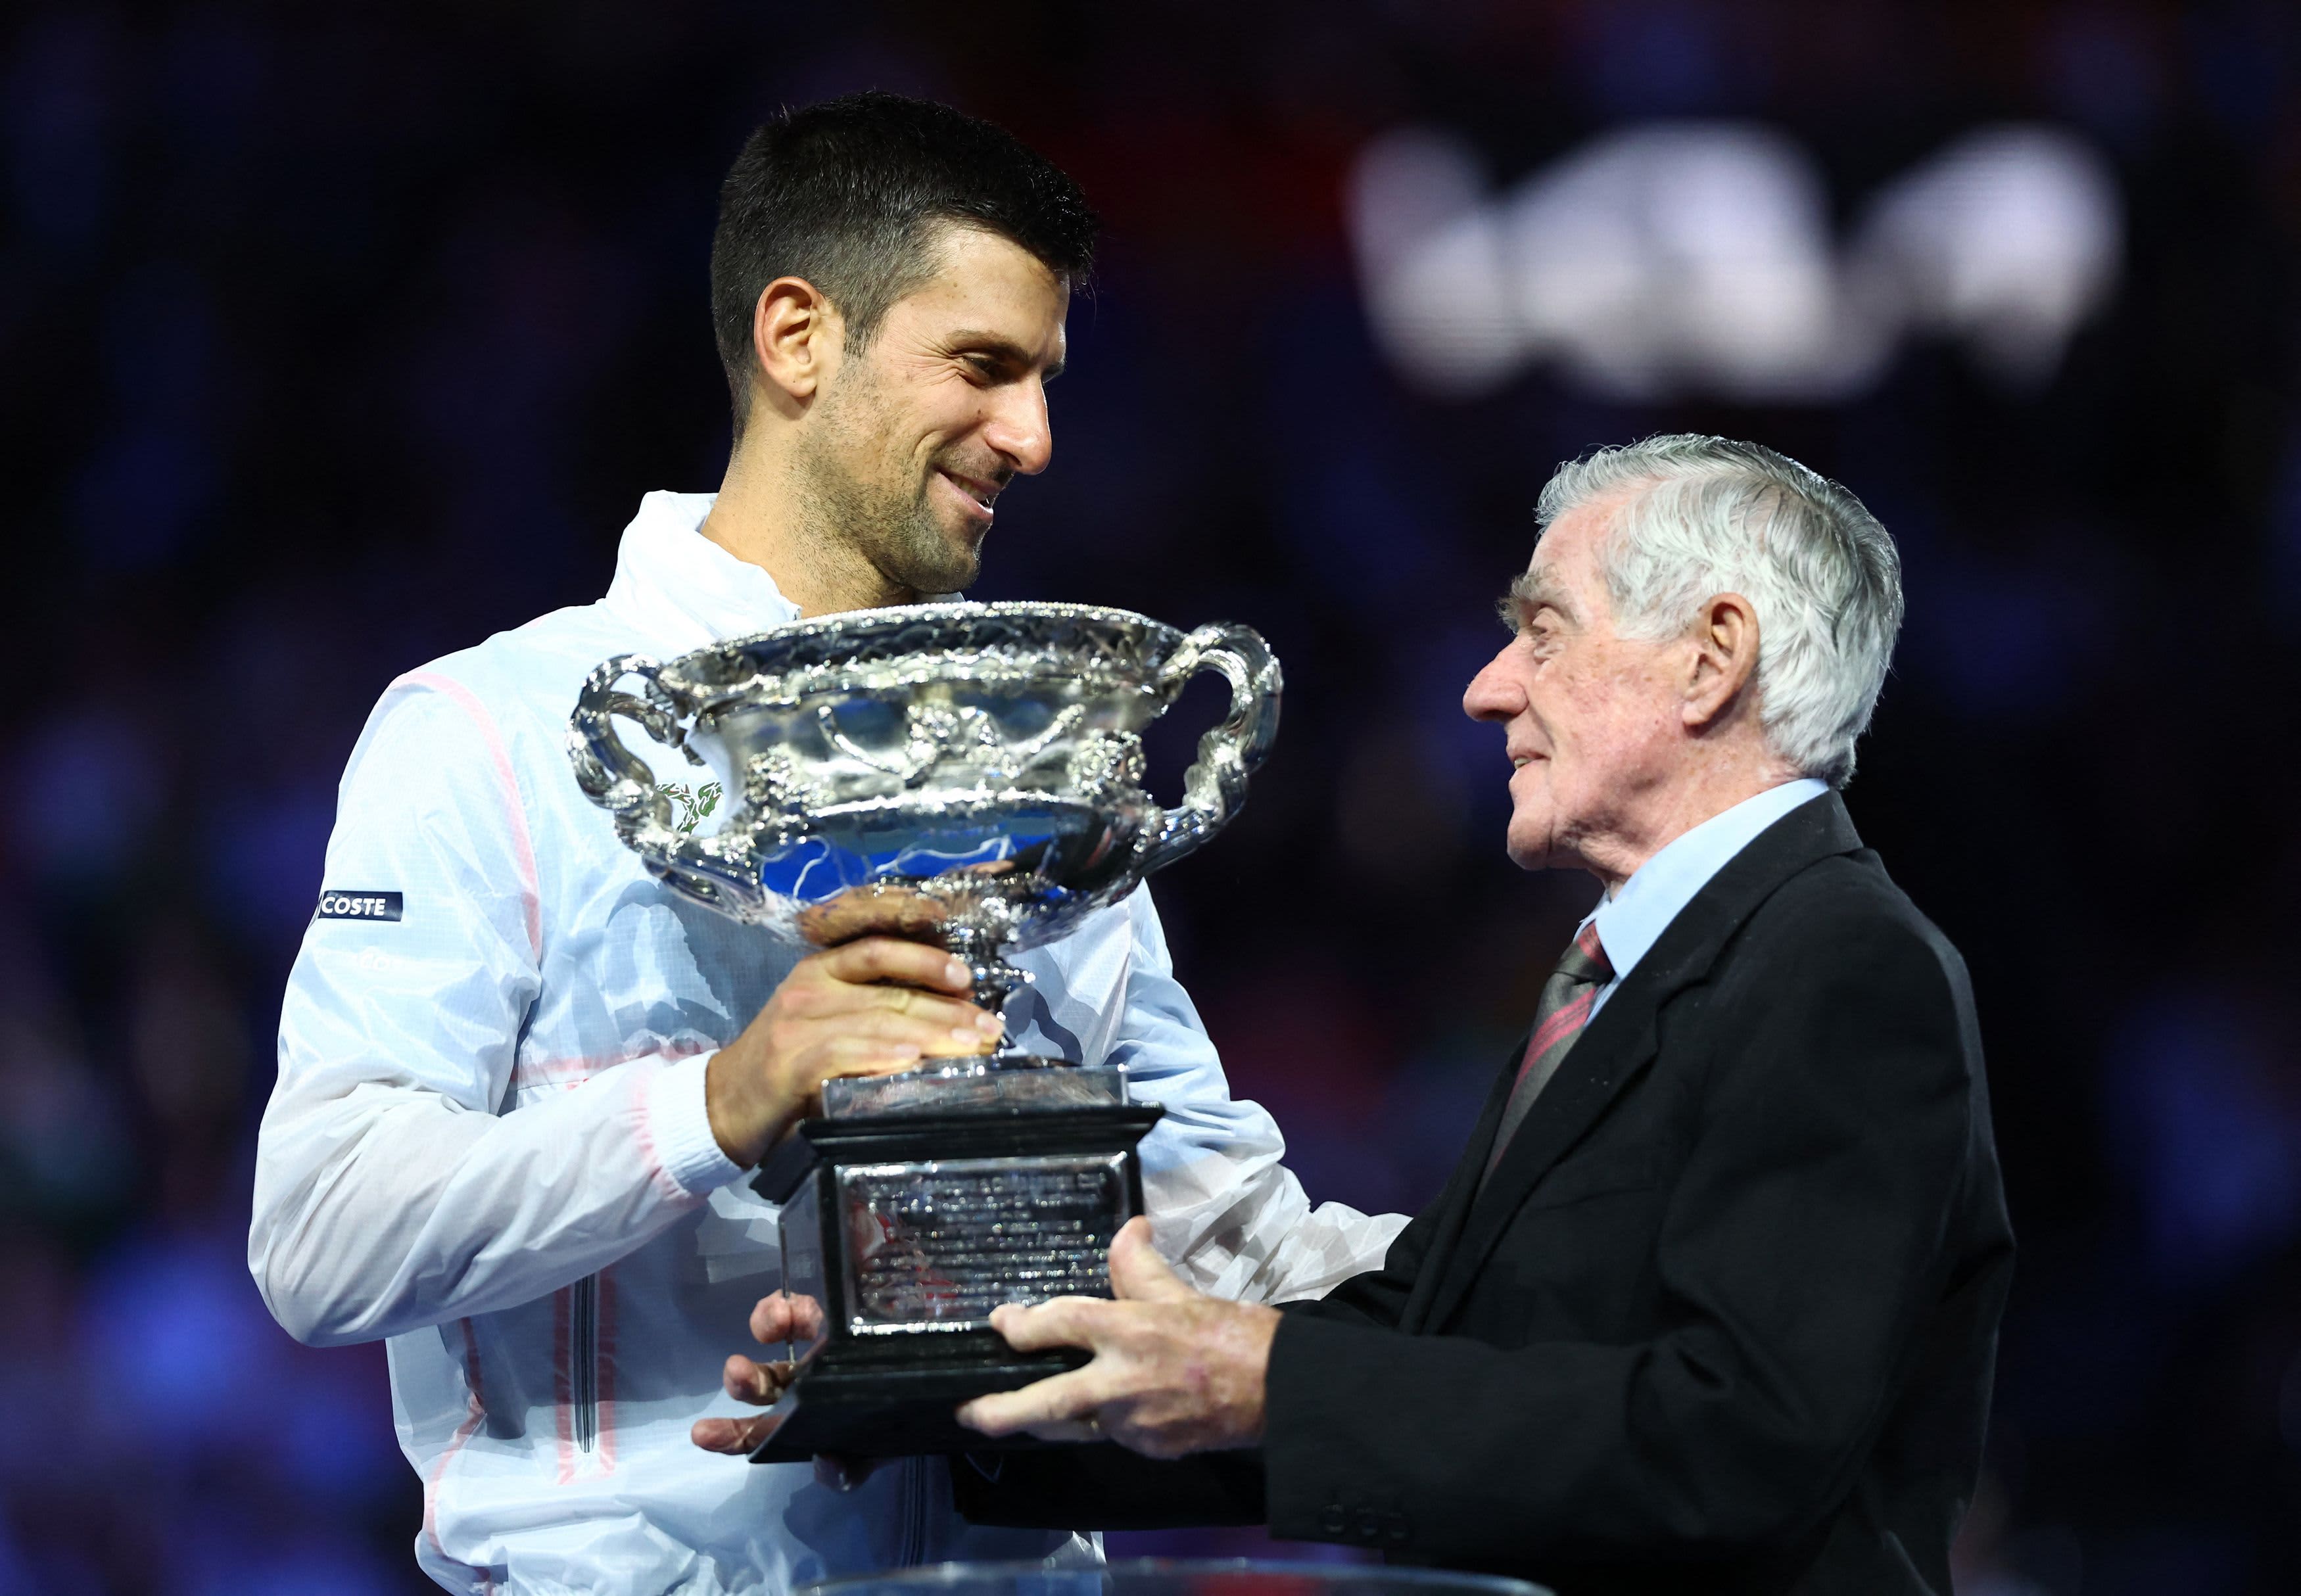 10th Australian Open Novak Djokovic beats Stefanos Tsitsipas